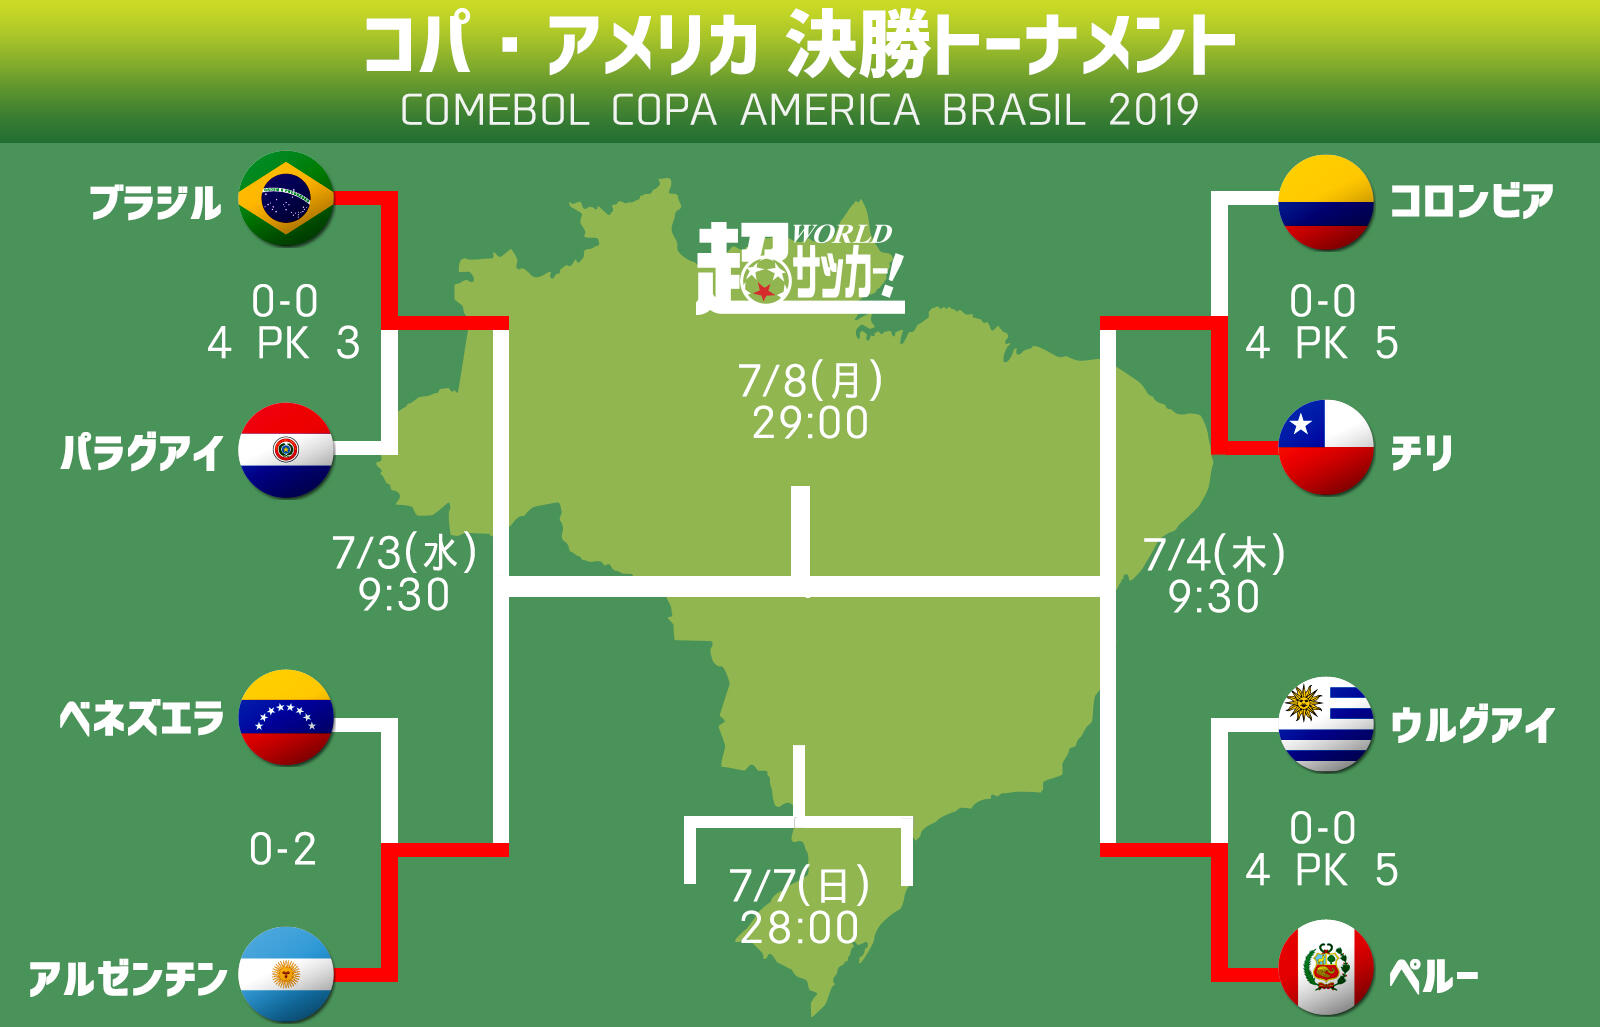 いよいよクライマックスの南米覇権争い ベスト4進出国が決定 コパ アメリカ 超ワールドサッカー